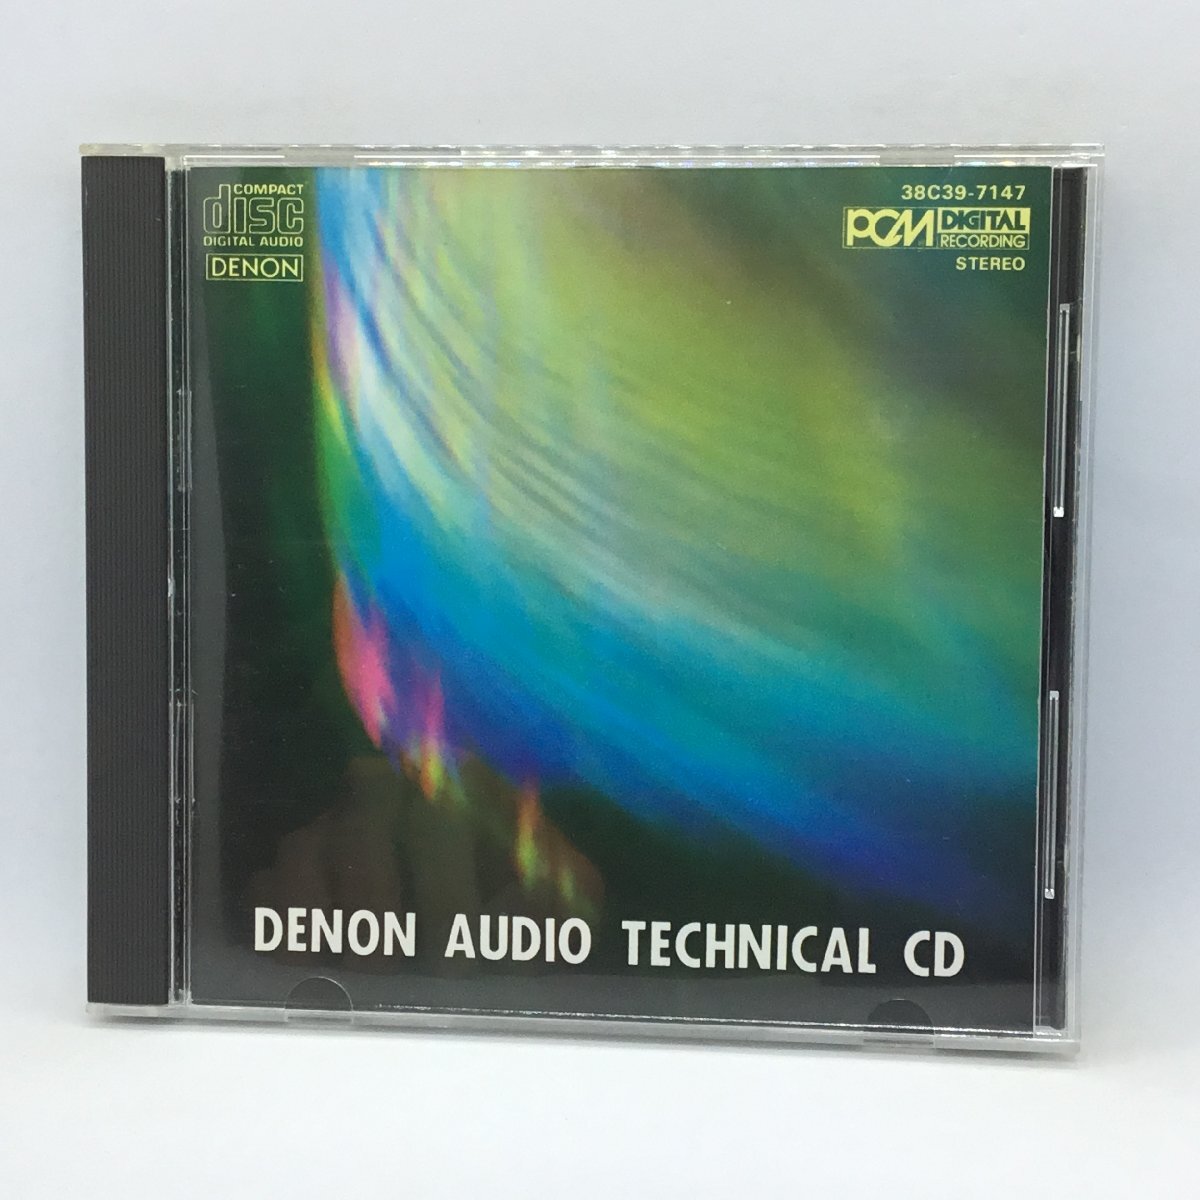 オリジナルケース◇デンオン・オーディオ・テクニカルCD (CD) 38C39-7147の画像1